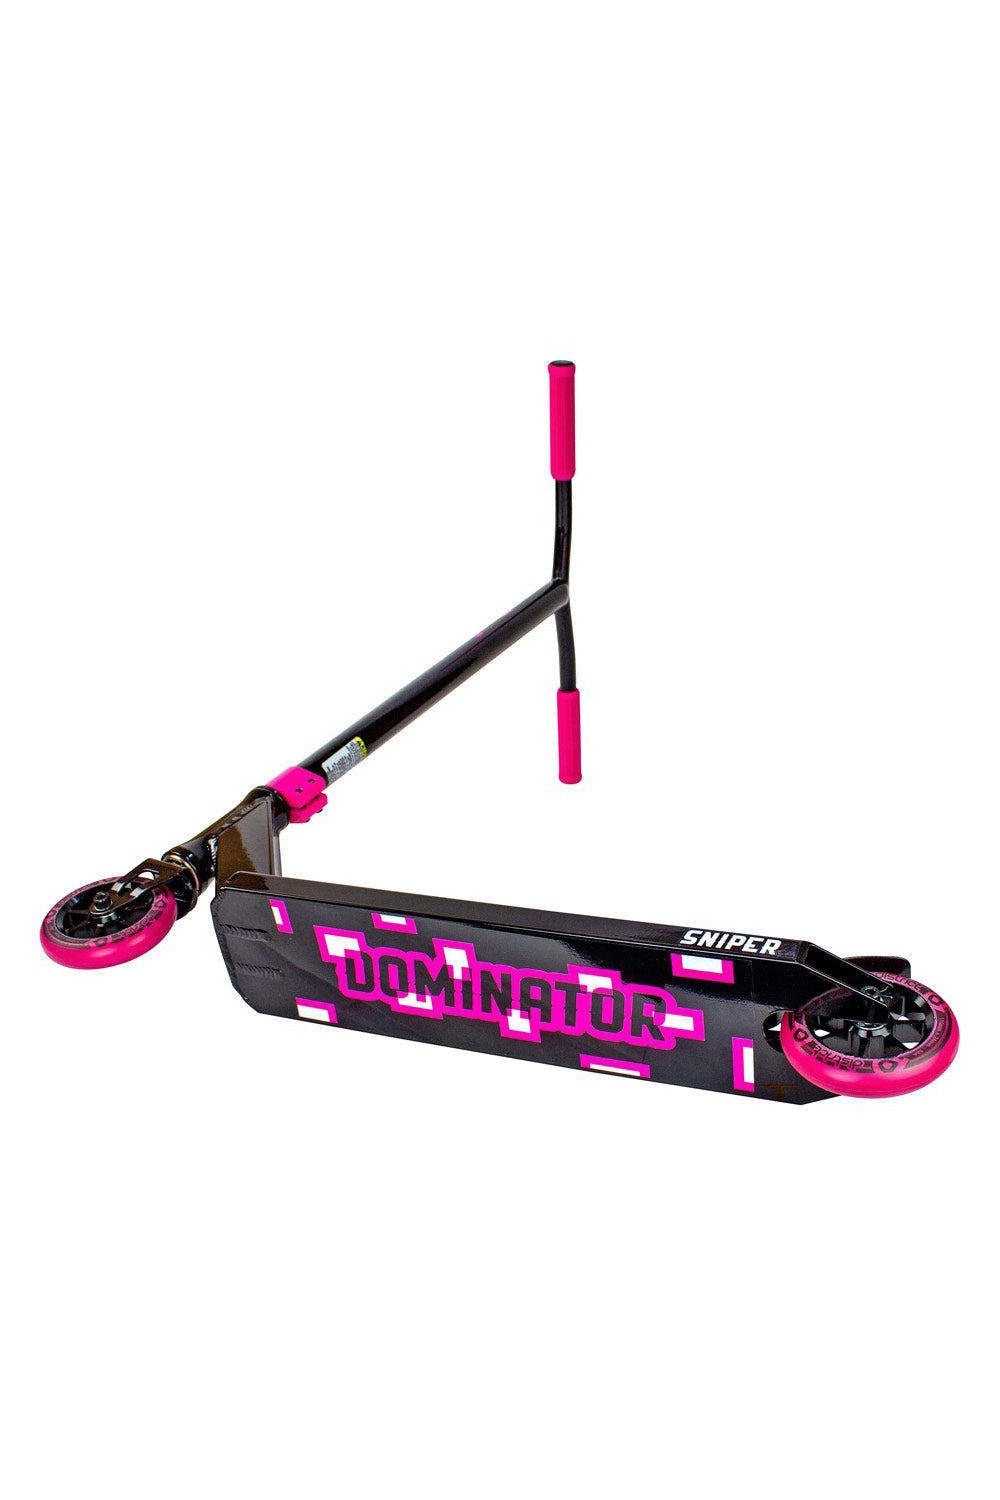 Dominator Sniper Scooter - Black/Pink